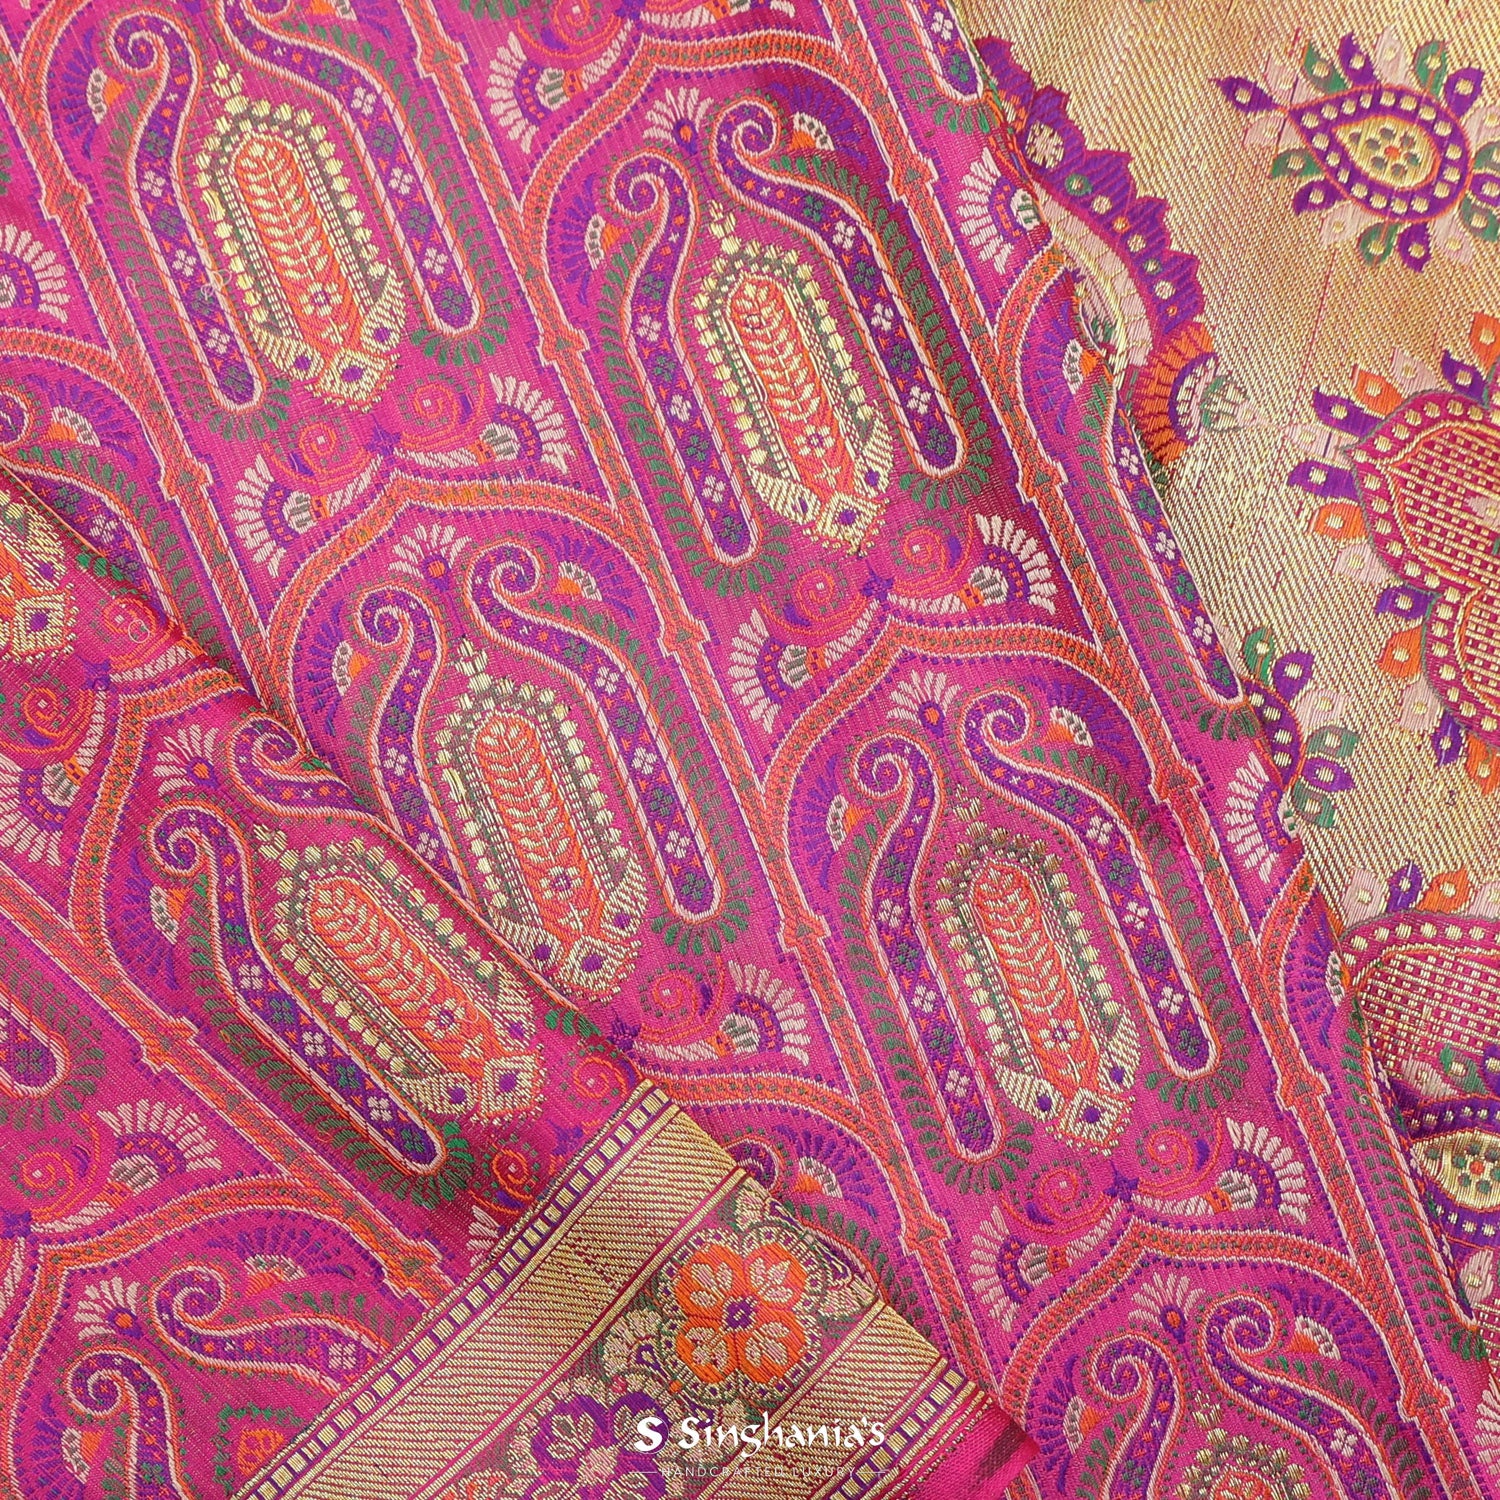 Hot Pink Silk Saree With Banarasi Weaving